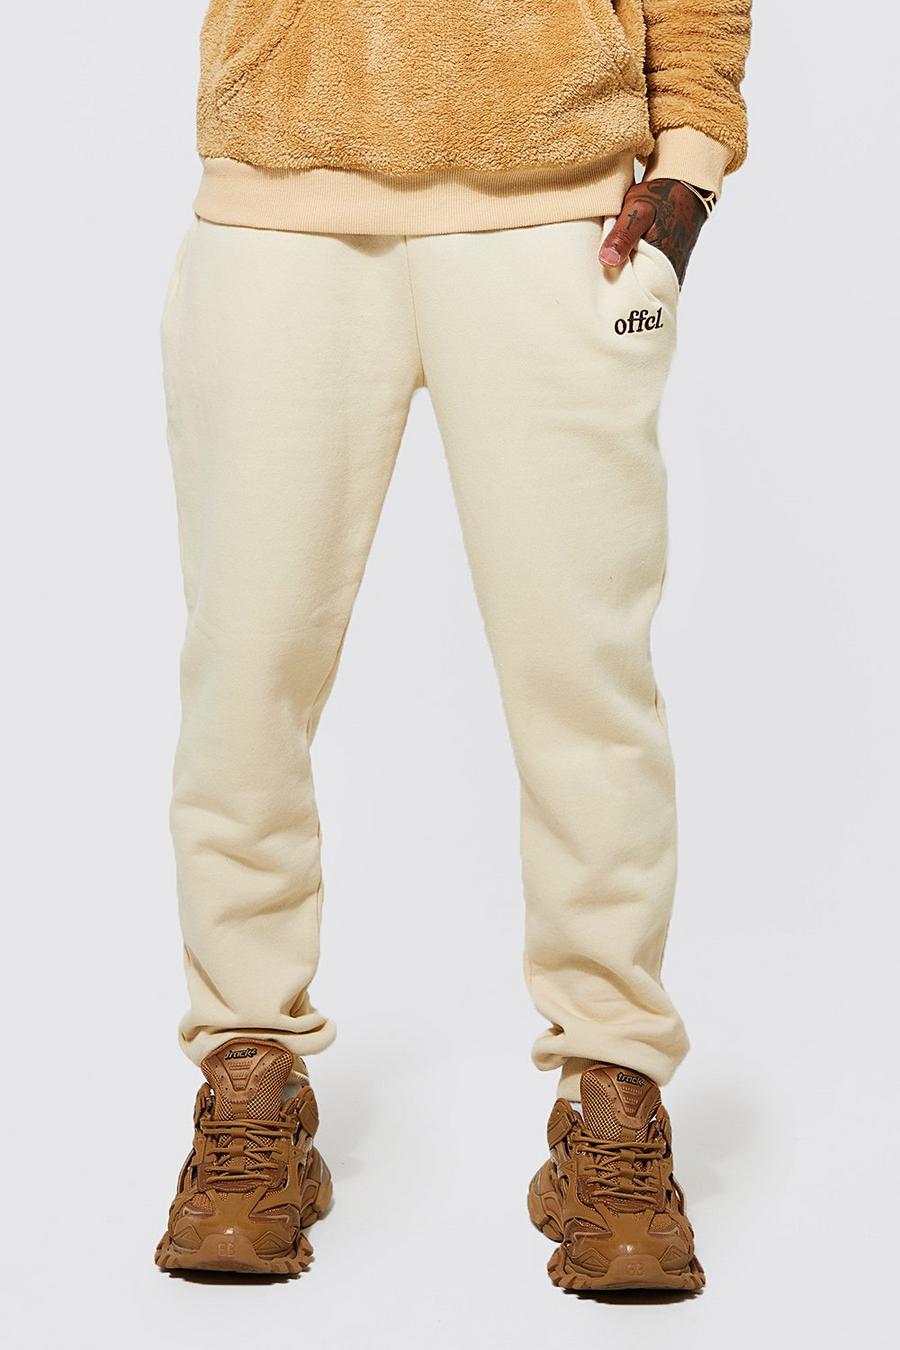 Pantalón deportivo Regular Offcl, Sand beige